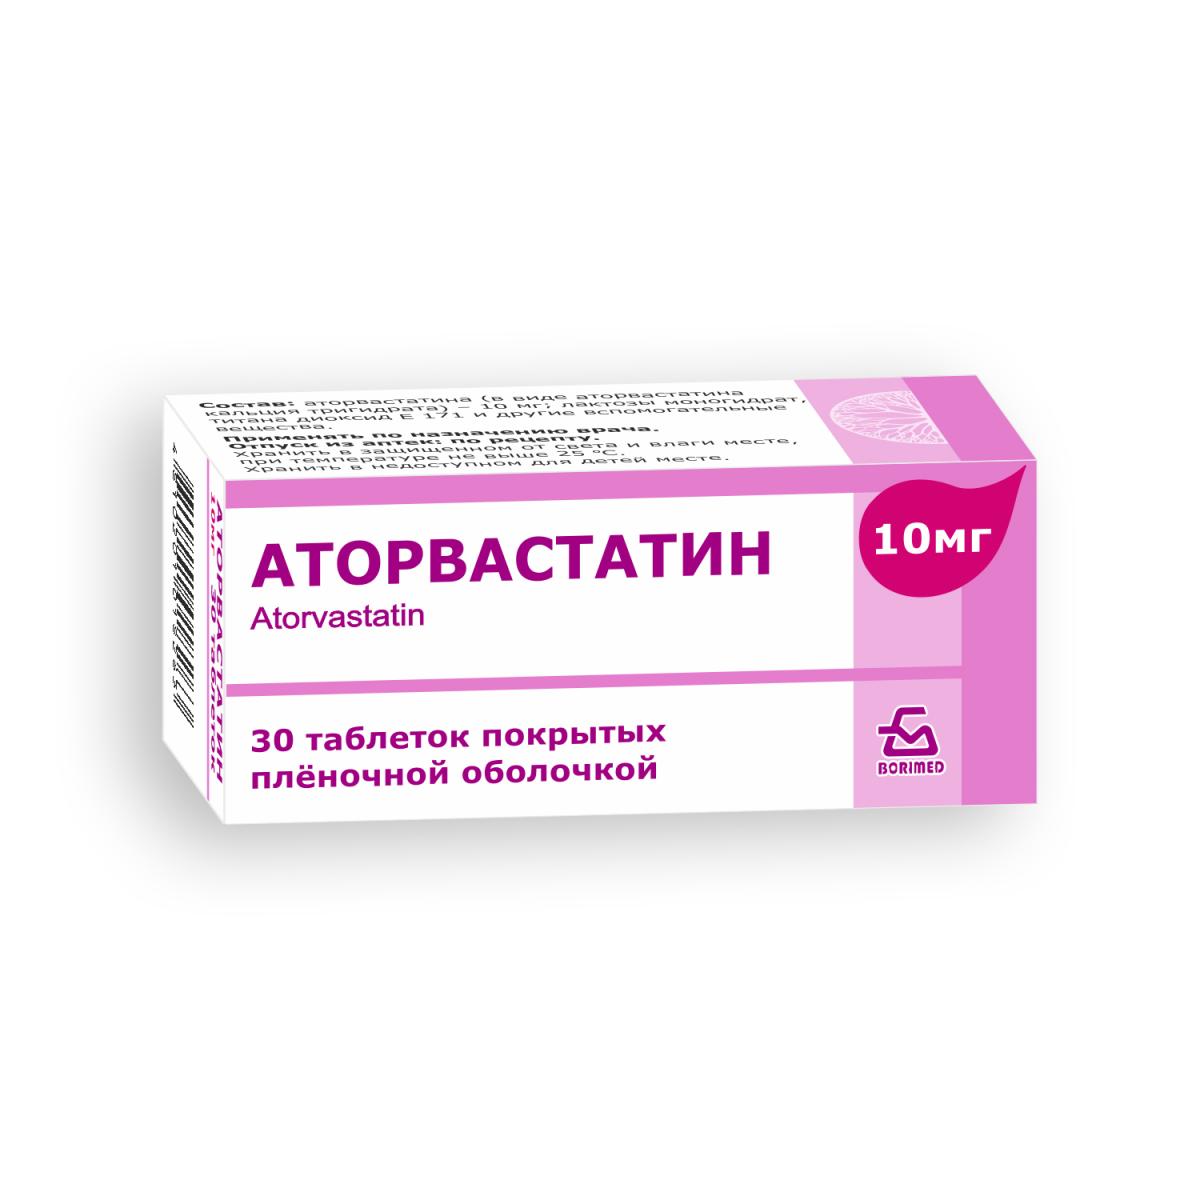 Аторвастатин 10 мг отзывы аналоги